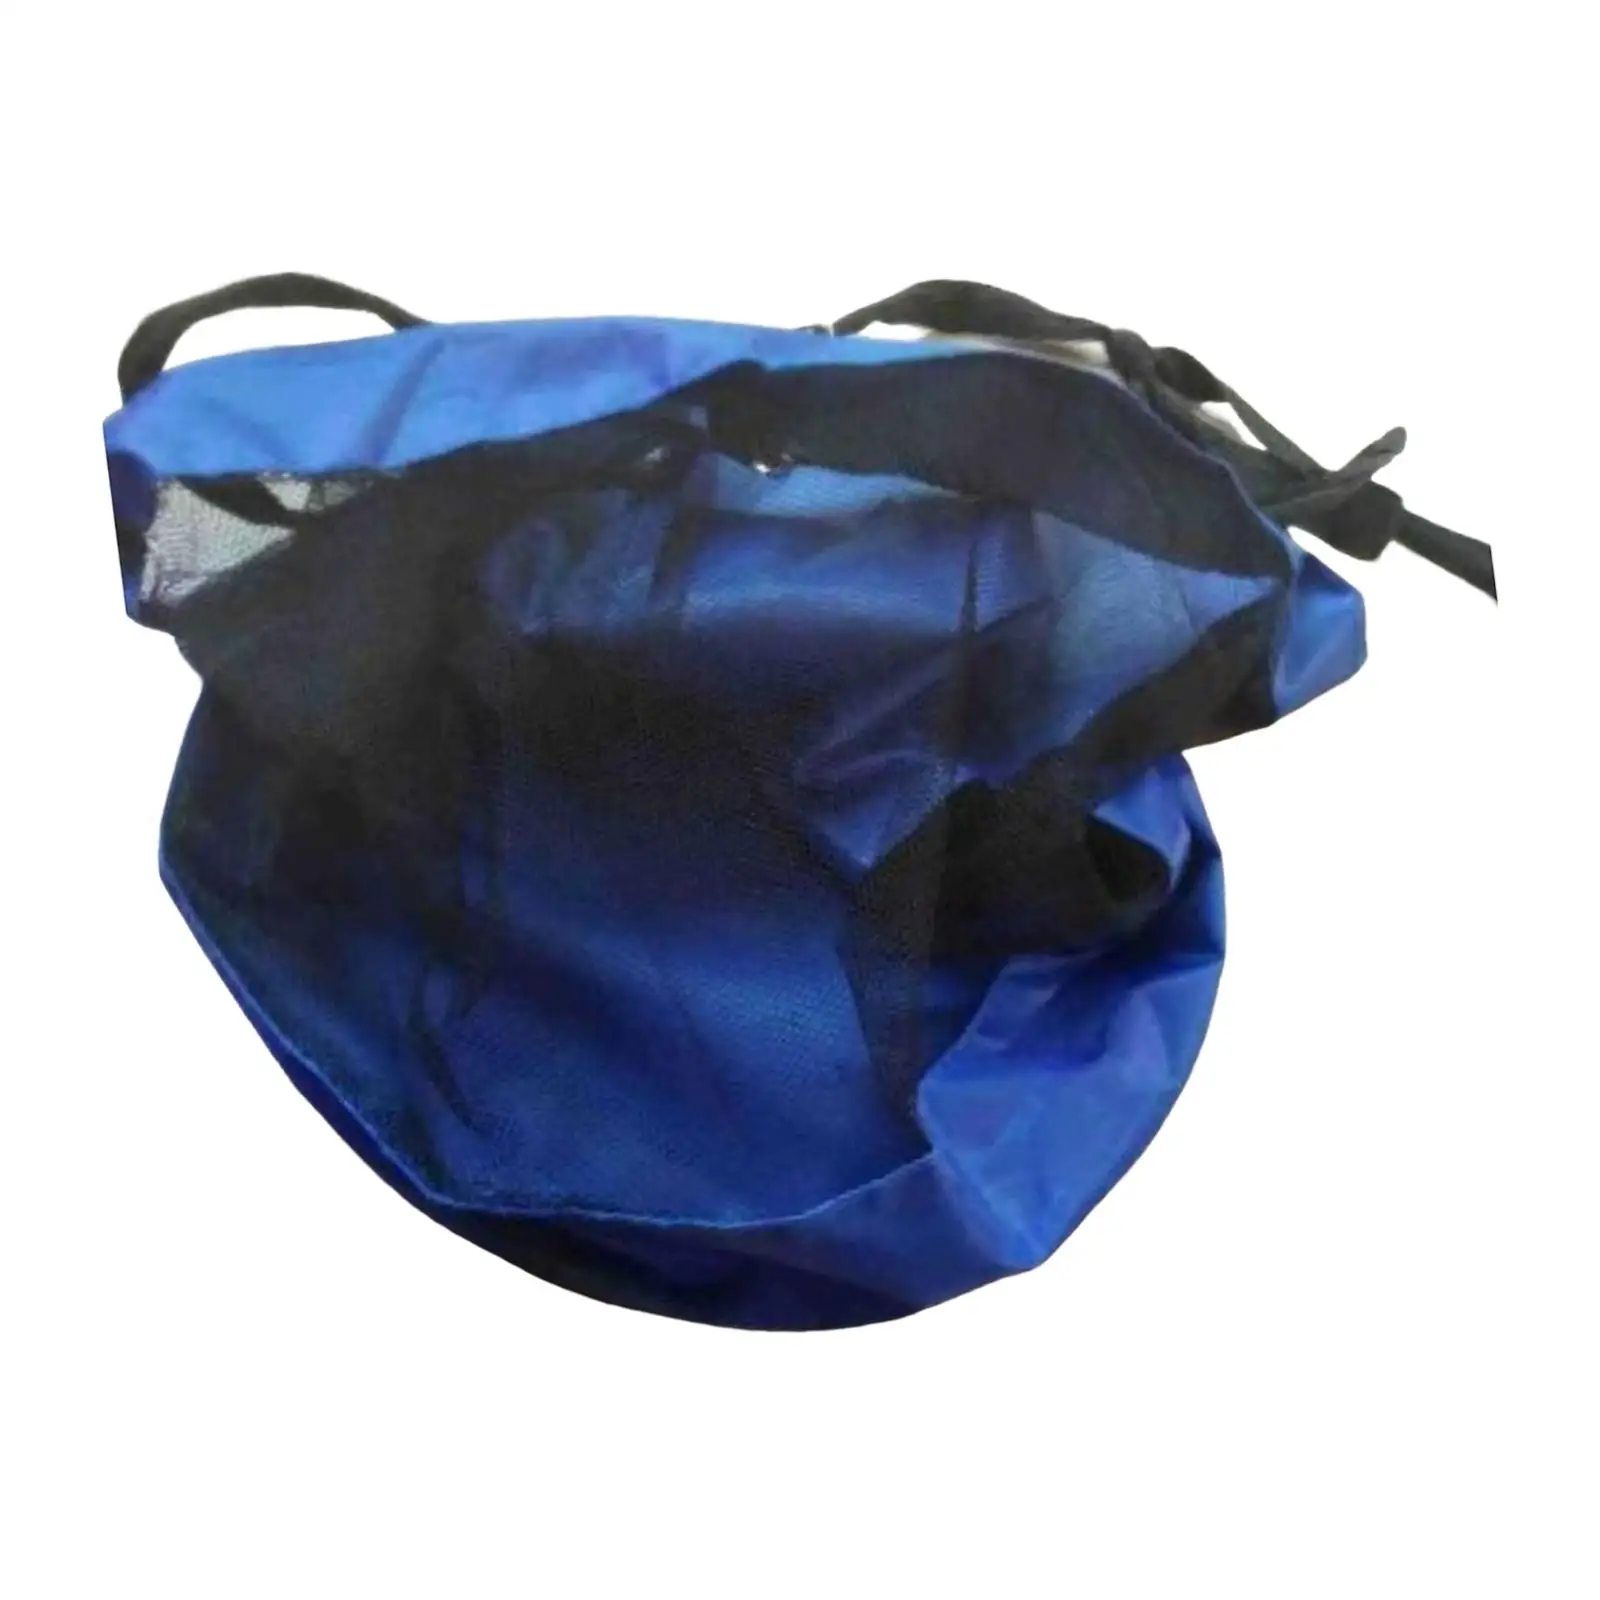 Basketball Backpack Sackpack Gym Bag Storage Bag Mesh Carry Bag for Football Rugby Ball Basketball Volleyball